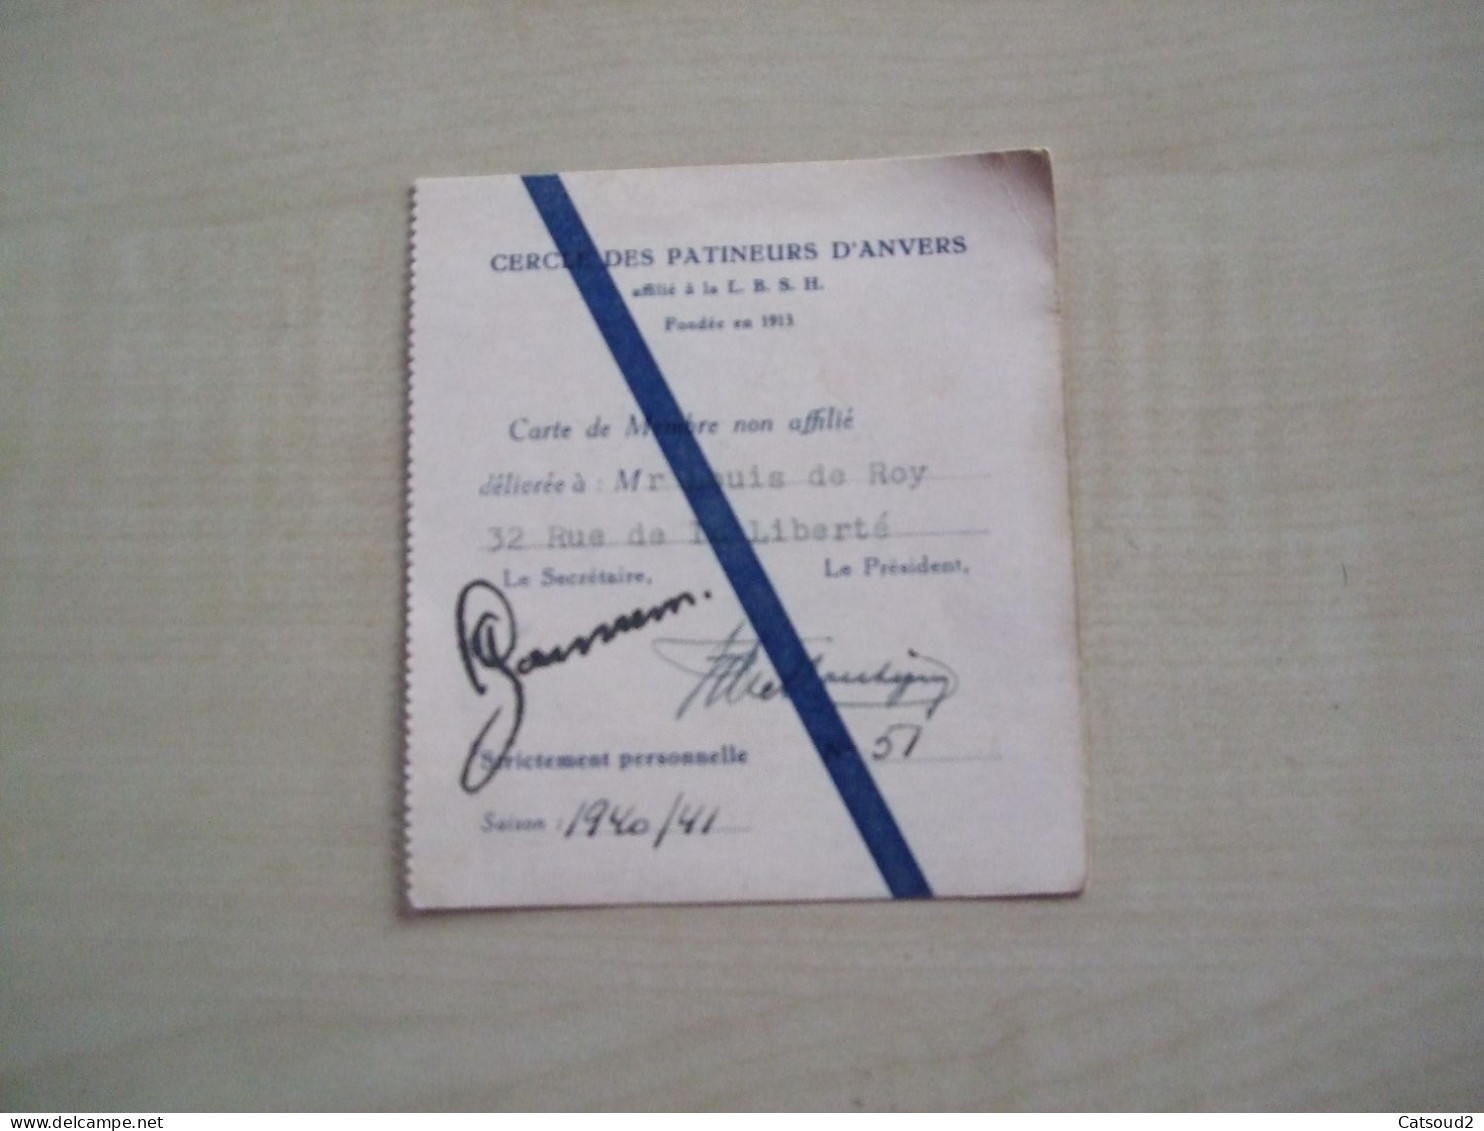 Carte De Membre Ancienne 1940/41 CERCLE DES PATINEURS D'ANVERS - Membership Cards